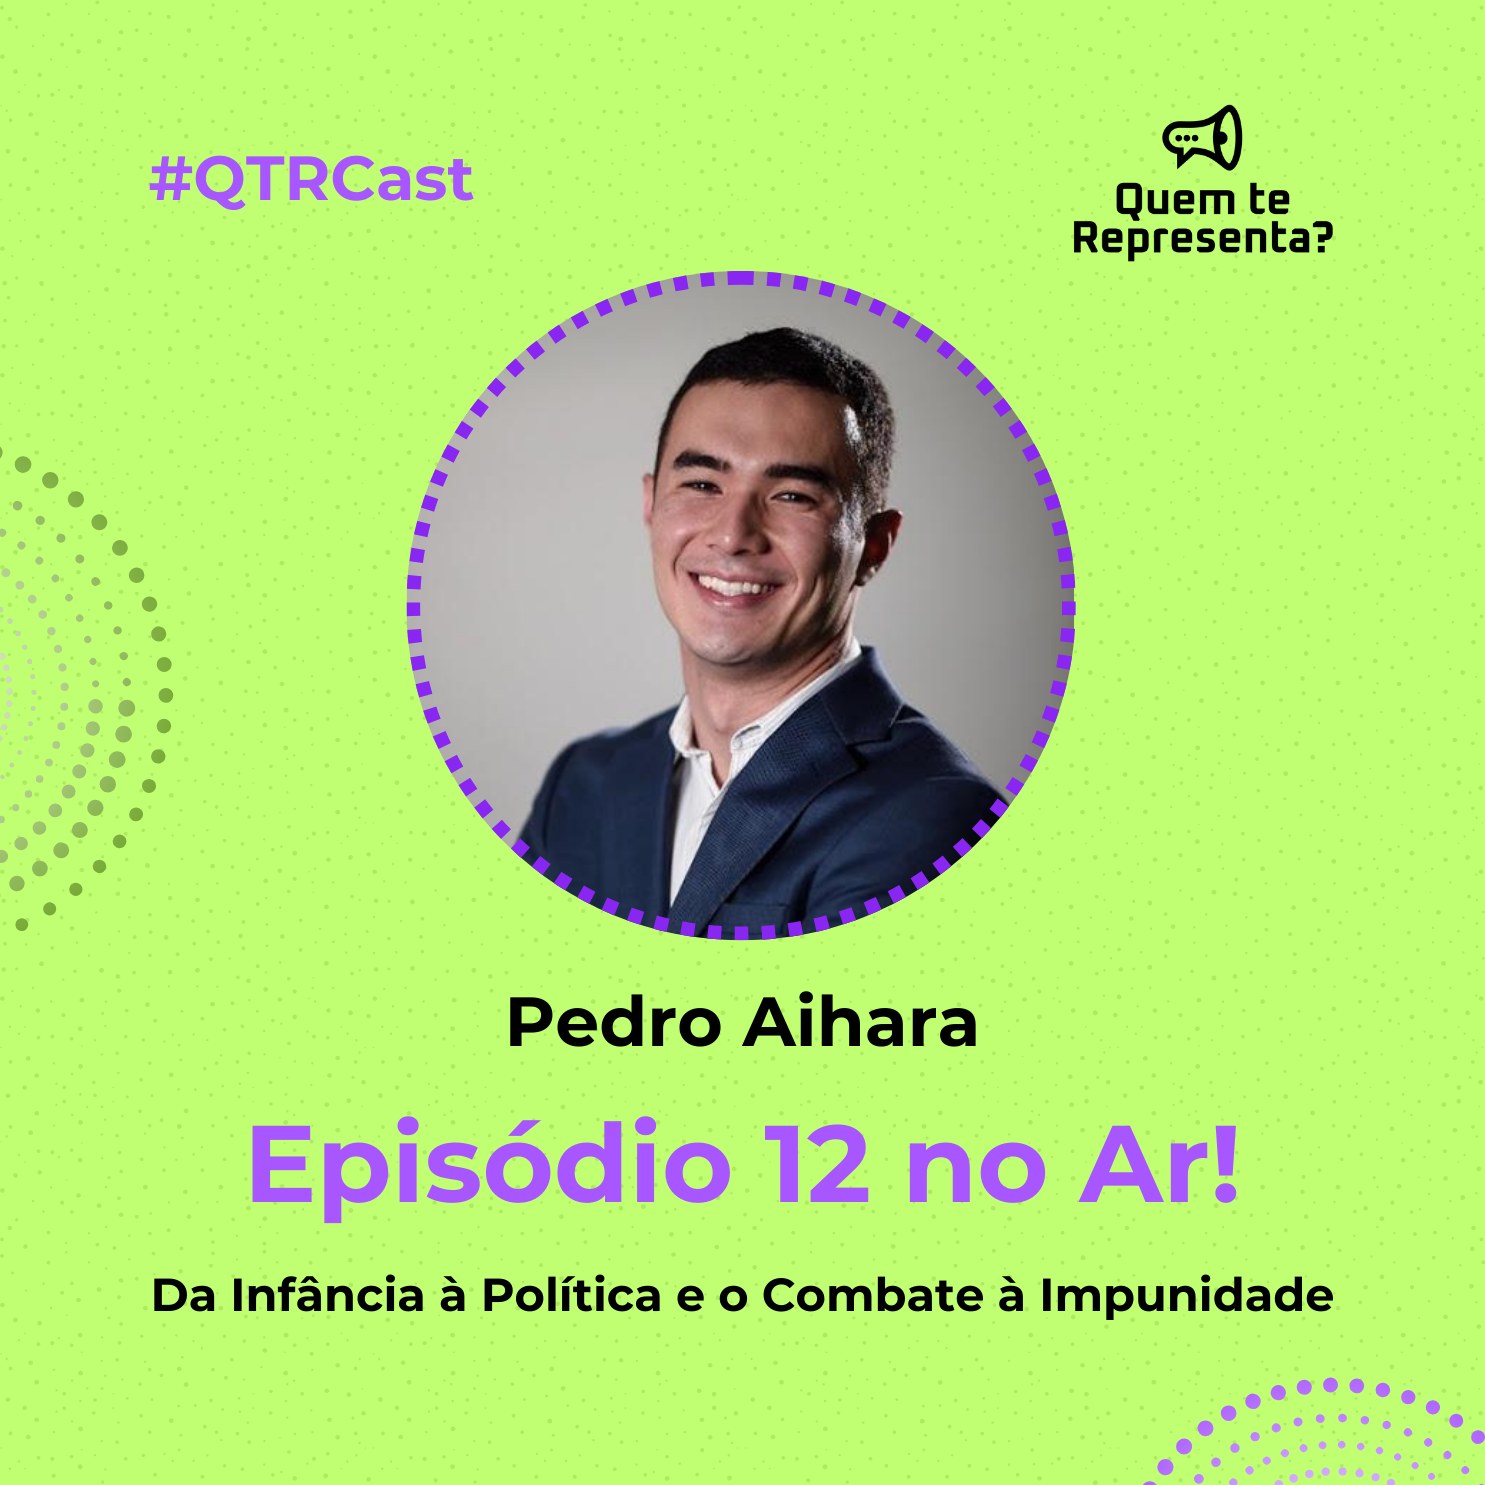 Pedro Aihara em entrevista ao QTRCast